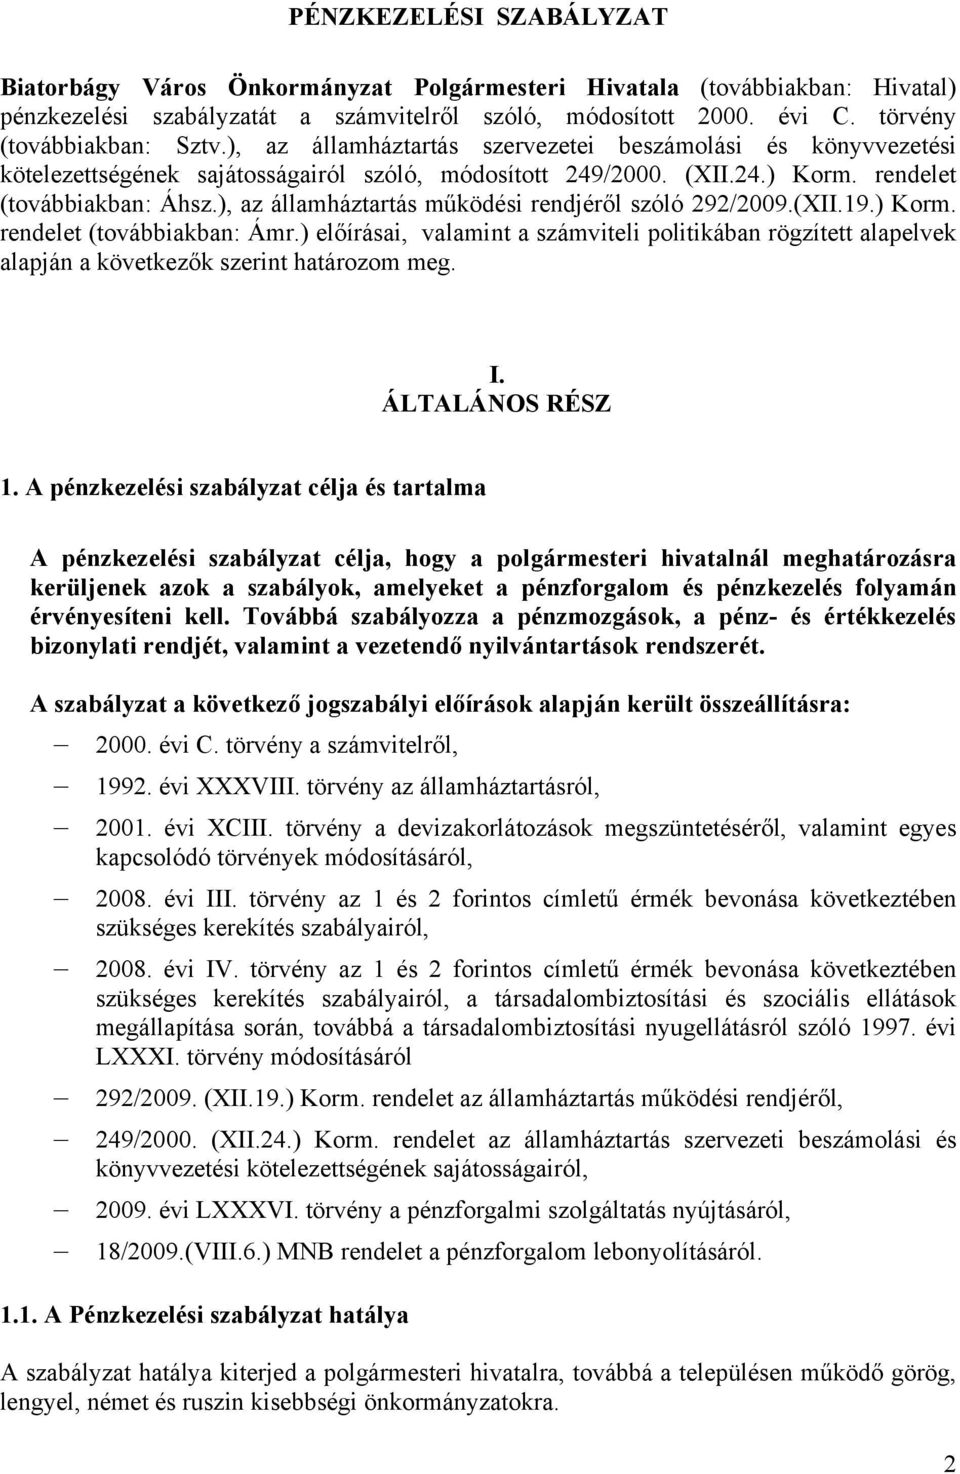 ), az államháztartás működési rendjéről szóló 292/2009.(XII.19.) Korm. rendelet (továbbiakban: Ámr.